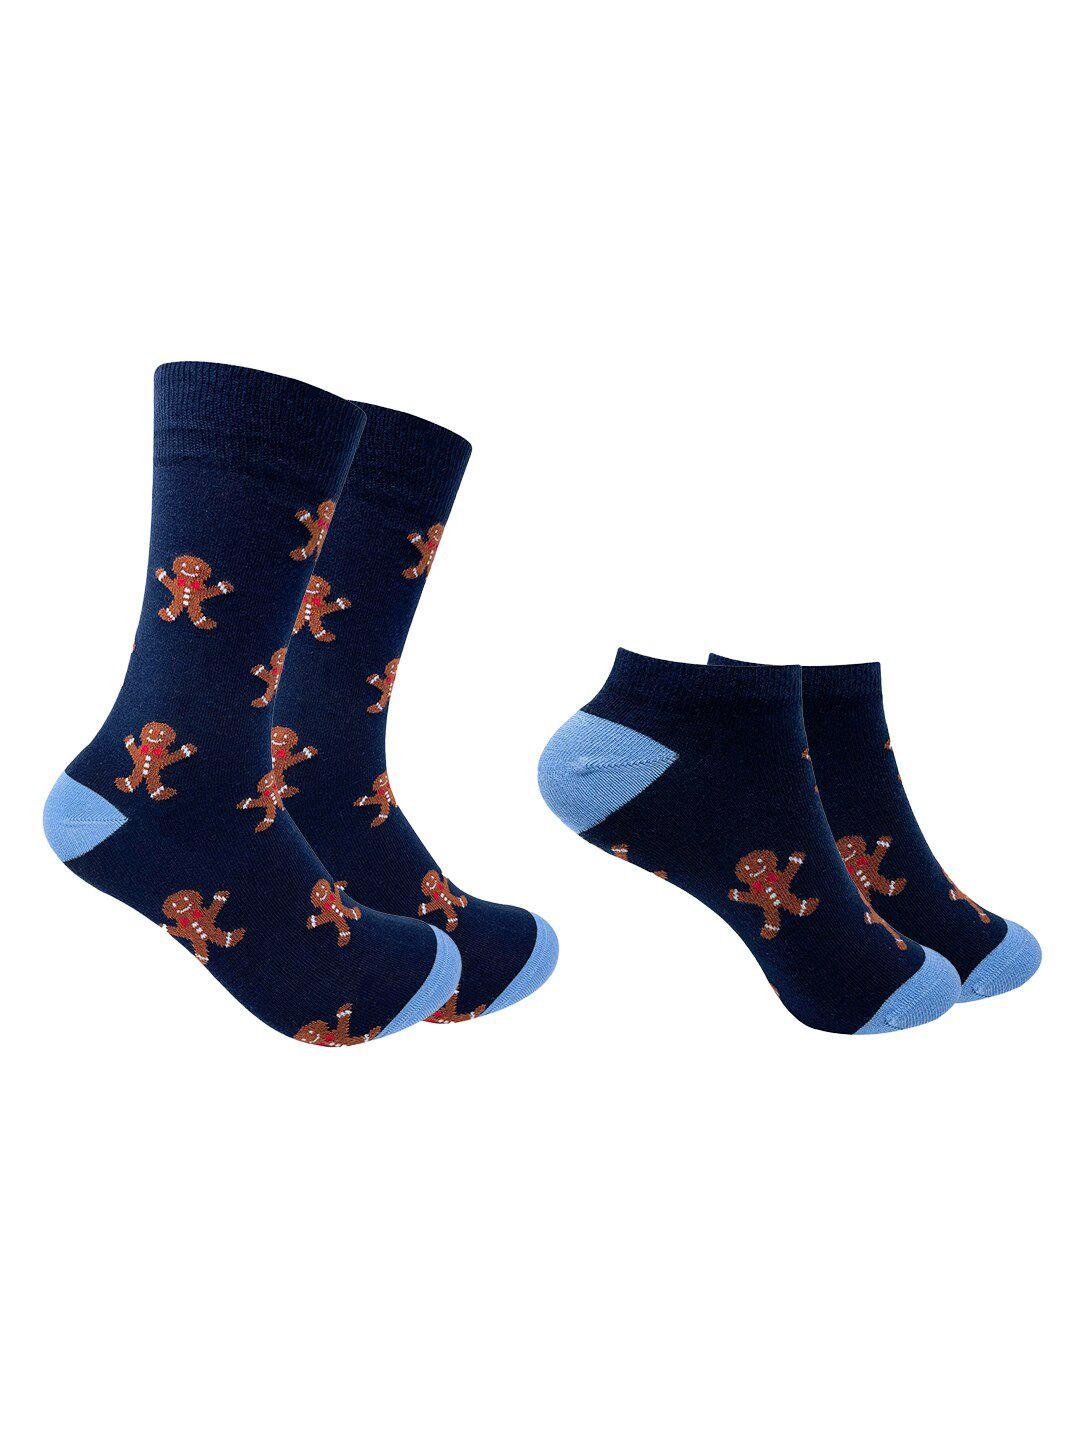 mint-&-oak-pack-of-2-navy-blue-patterned-calf-length-&-ankle-length-socks